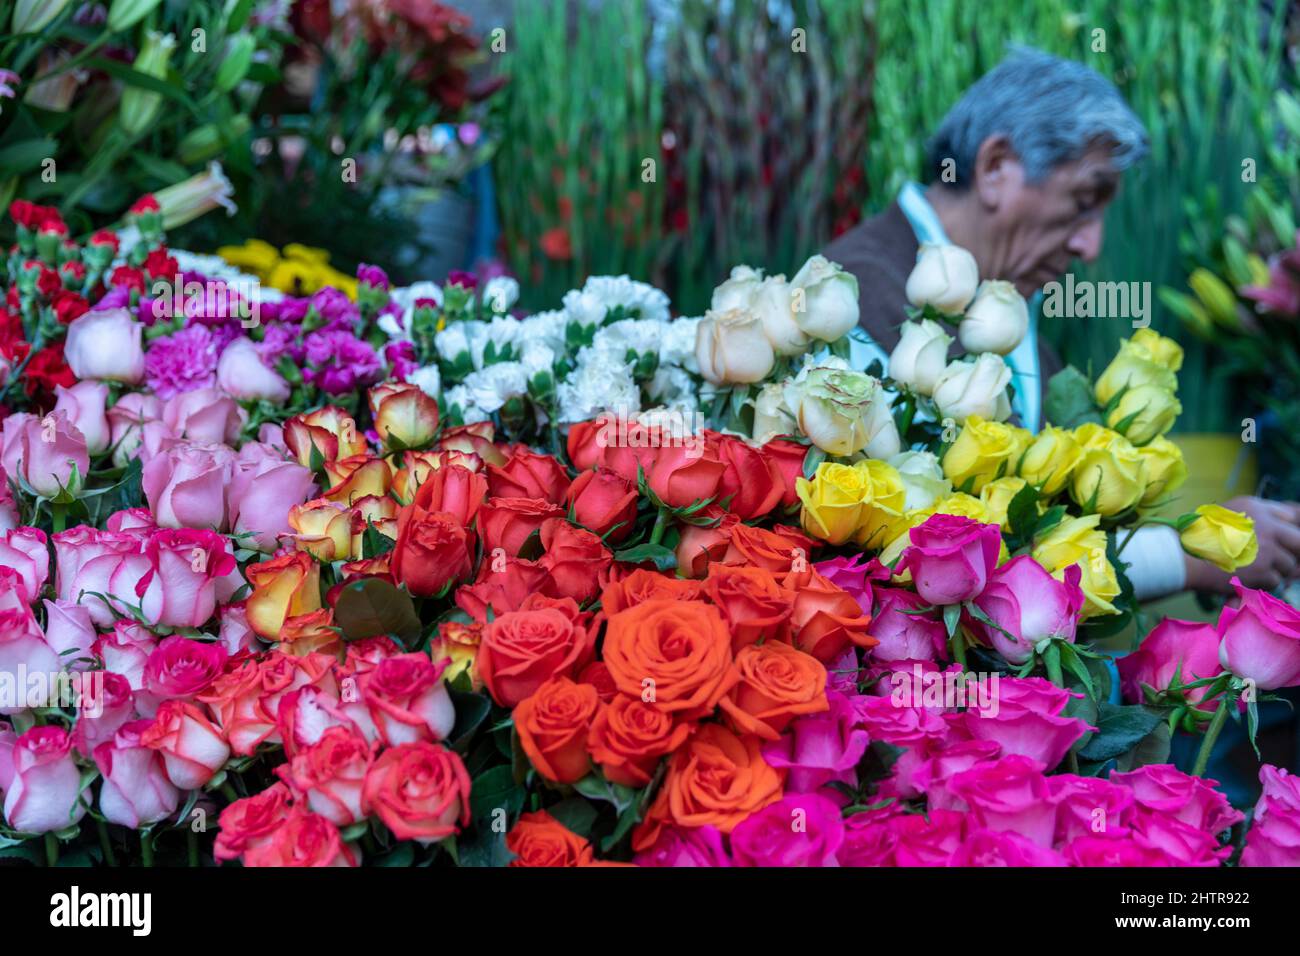 Mexiko, Guanajuato, San Miguel de Allende, Blumenarrangement an einem Blumenstand auf einem Markt Stockfoto